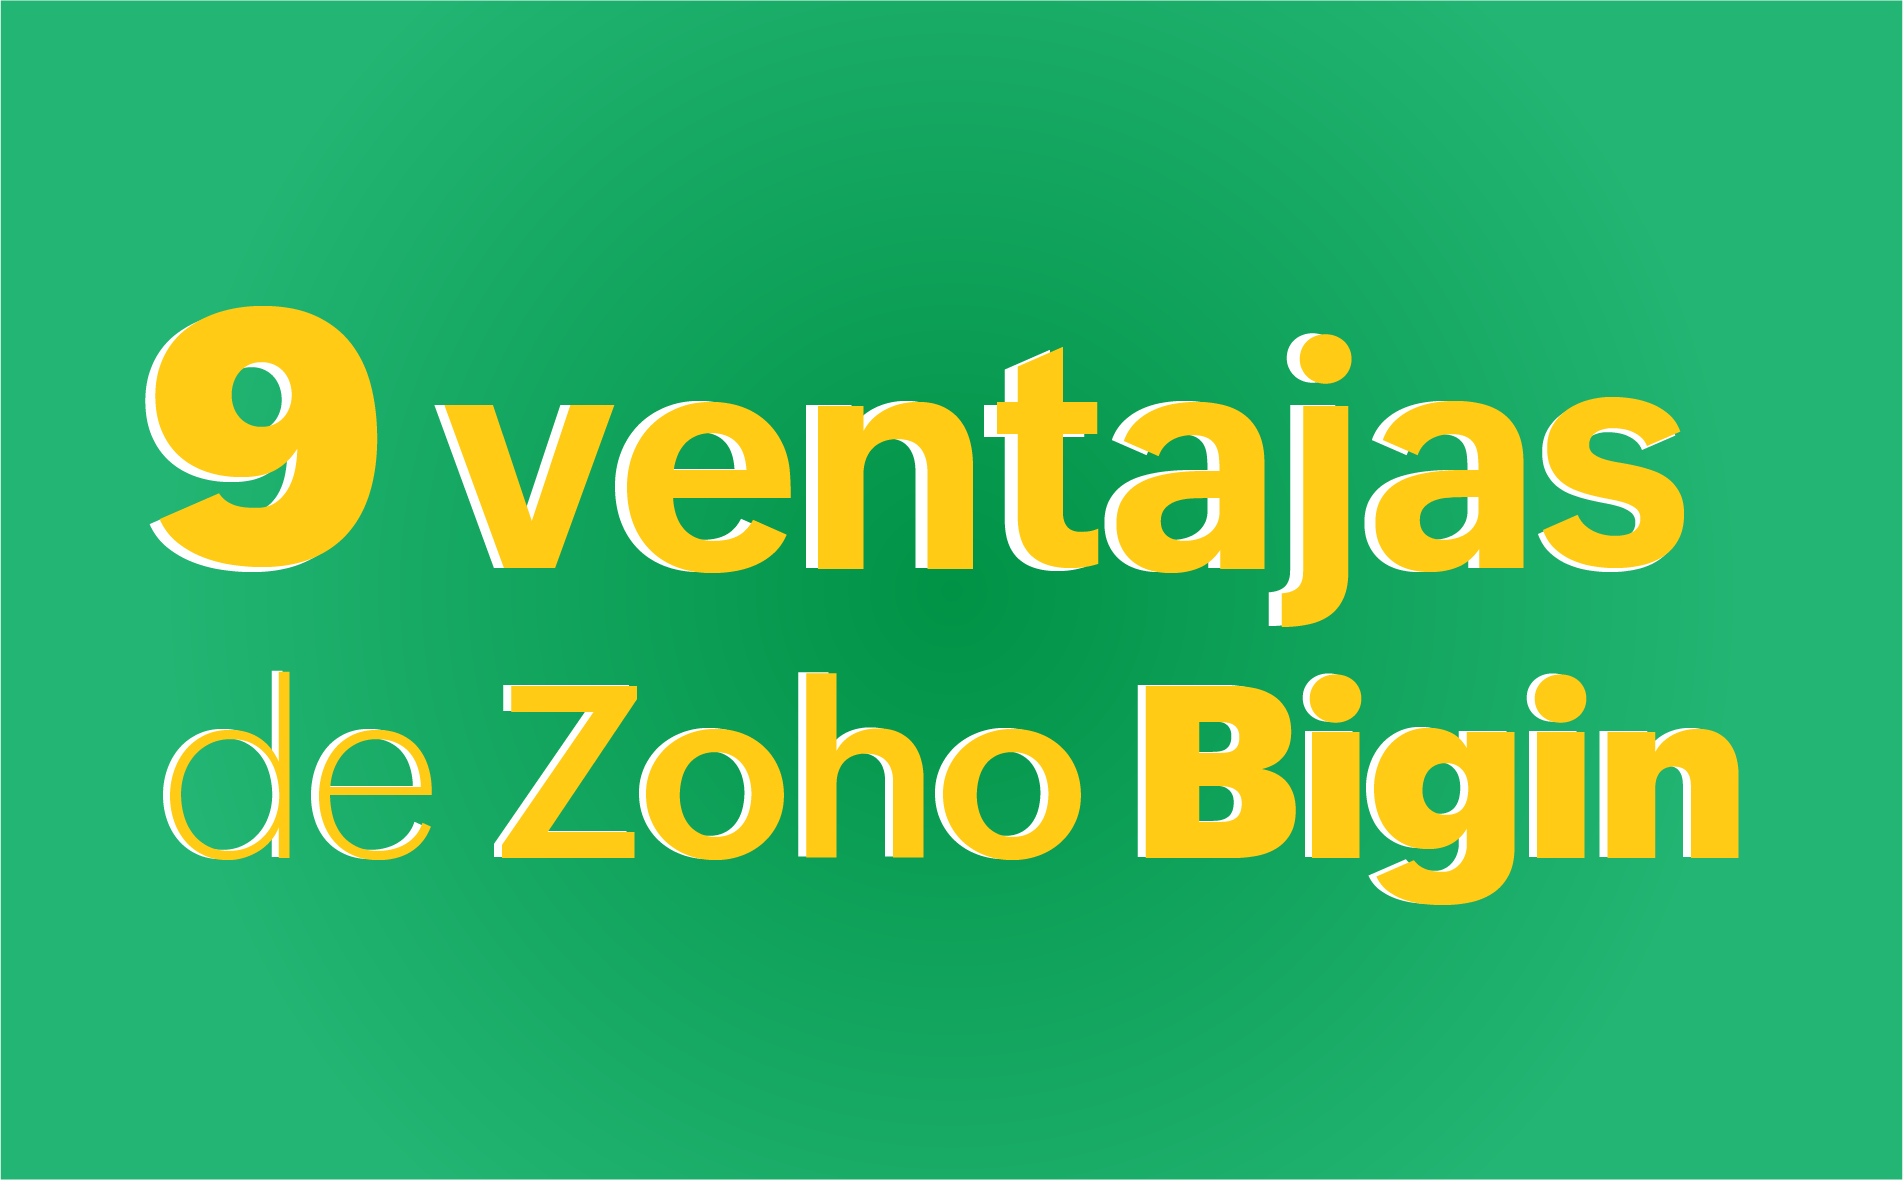 Zoho Bigin: Ventajas del CRM para emprendedores y pequeños negocios